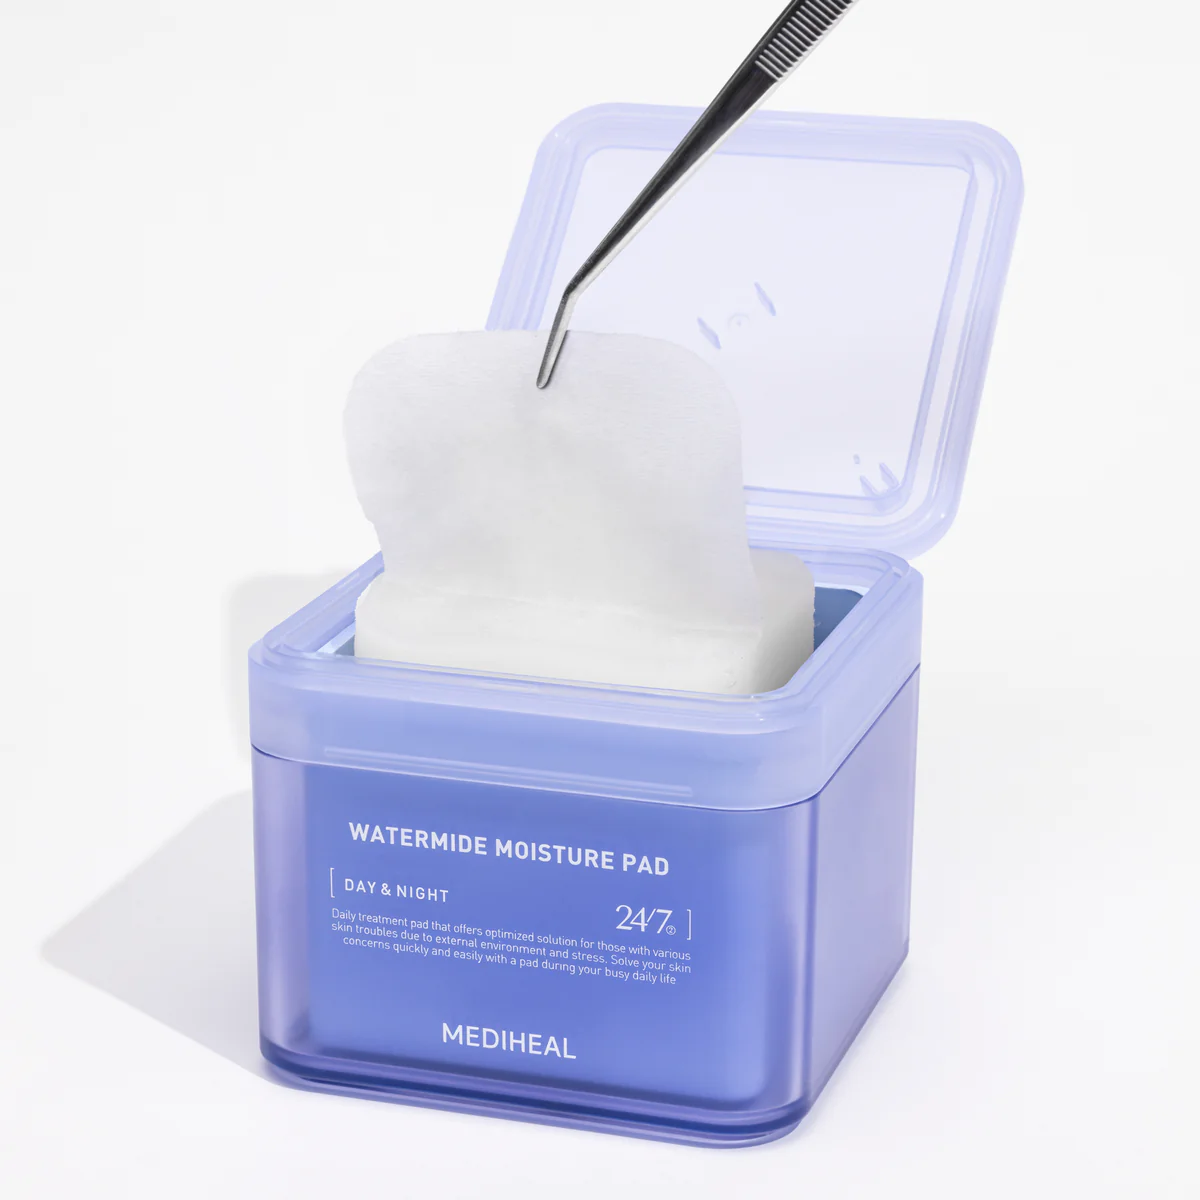 MEDIHEAL Watermide Toner Pad 170ml/100ea available now at Beauty Box Korea